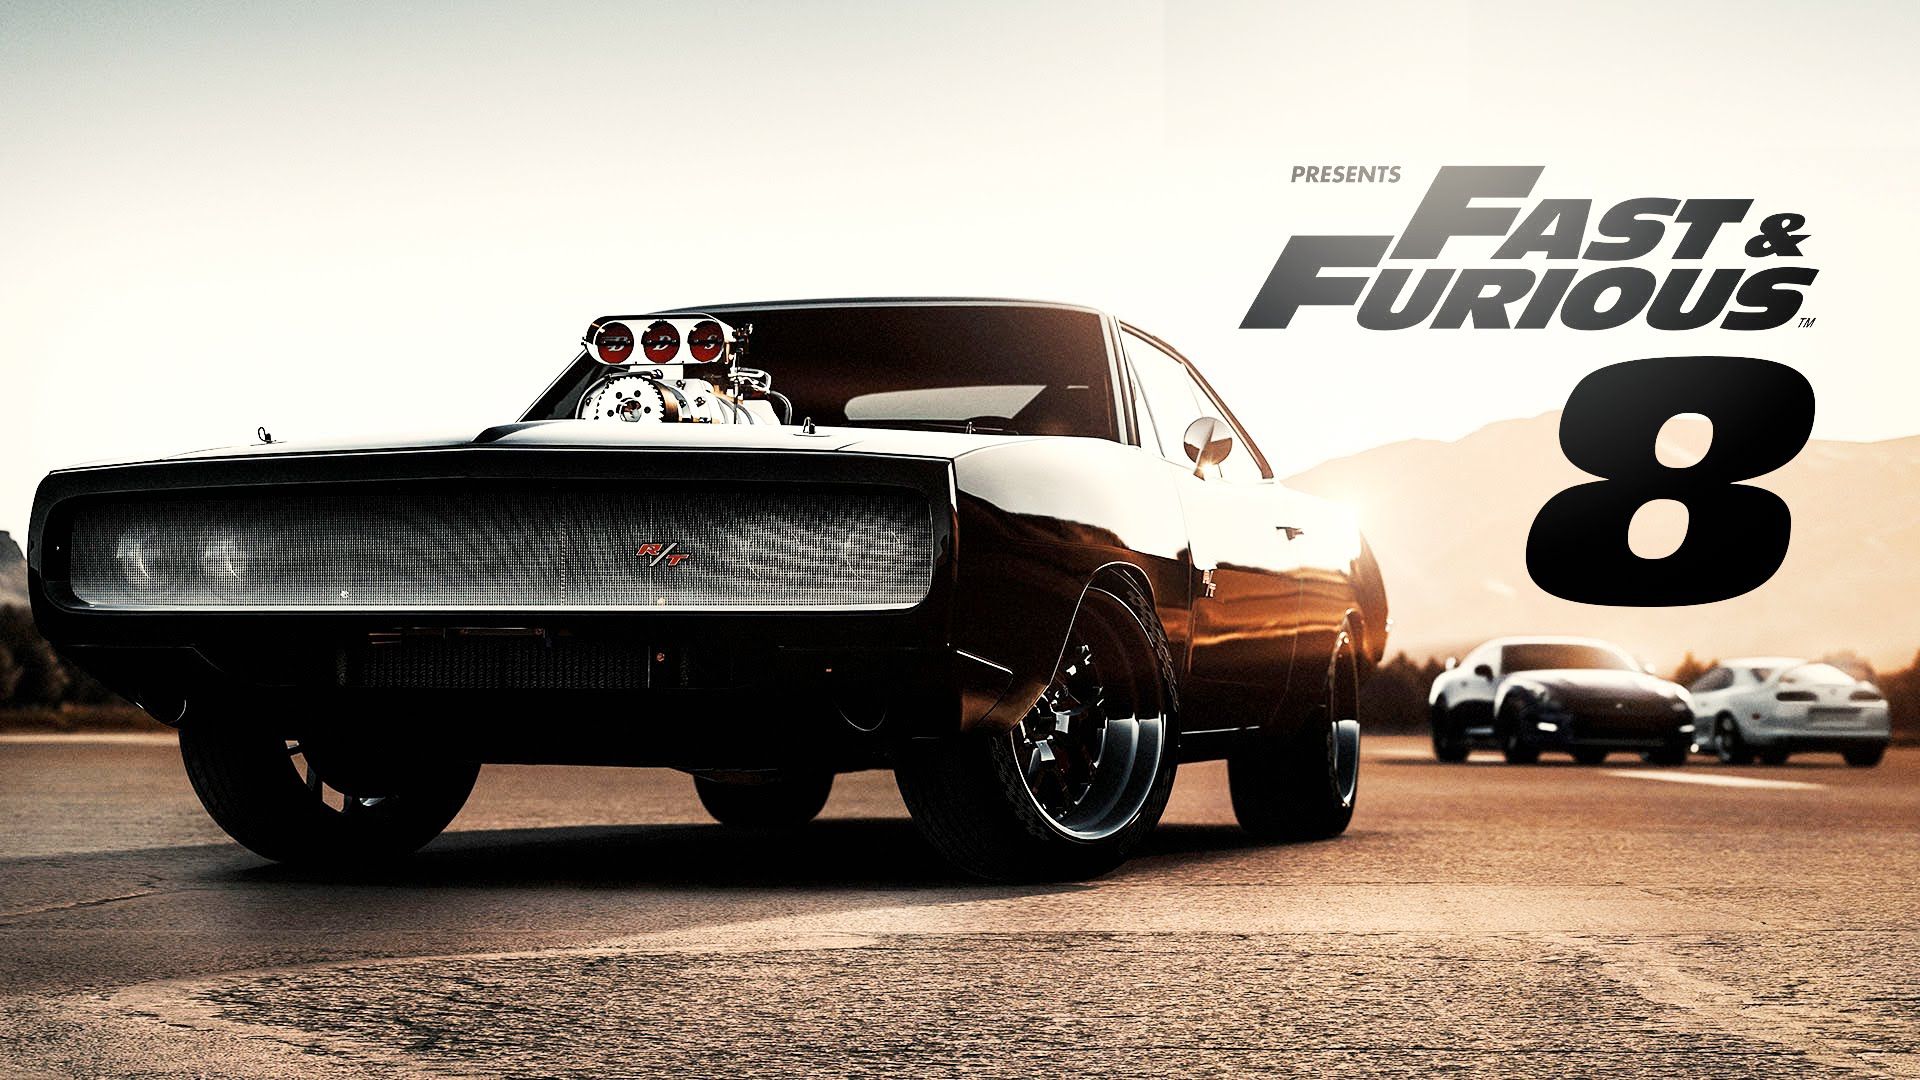 Il team di Dom Toretto al lavoro! Ecco un video dal set di Fast & Furious 8